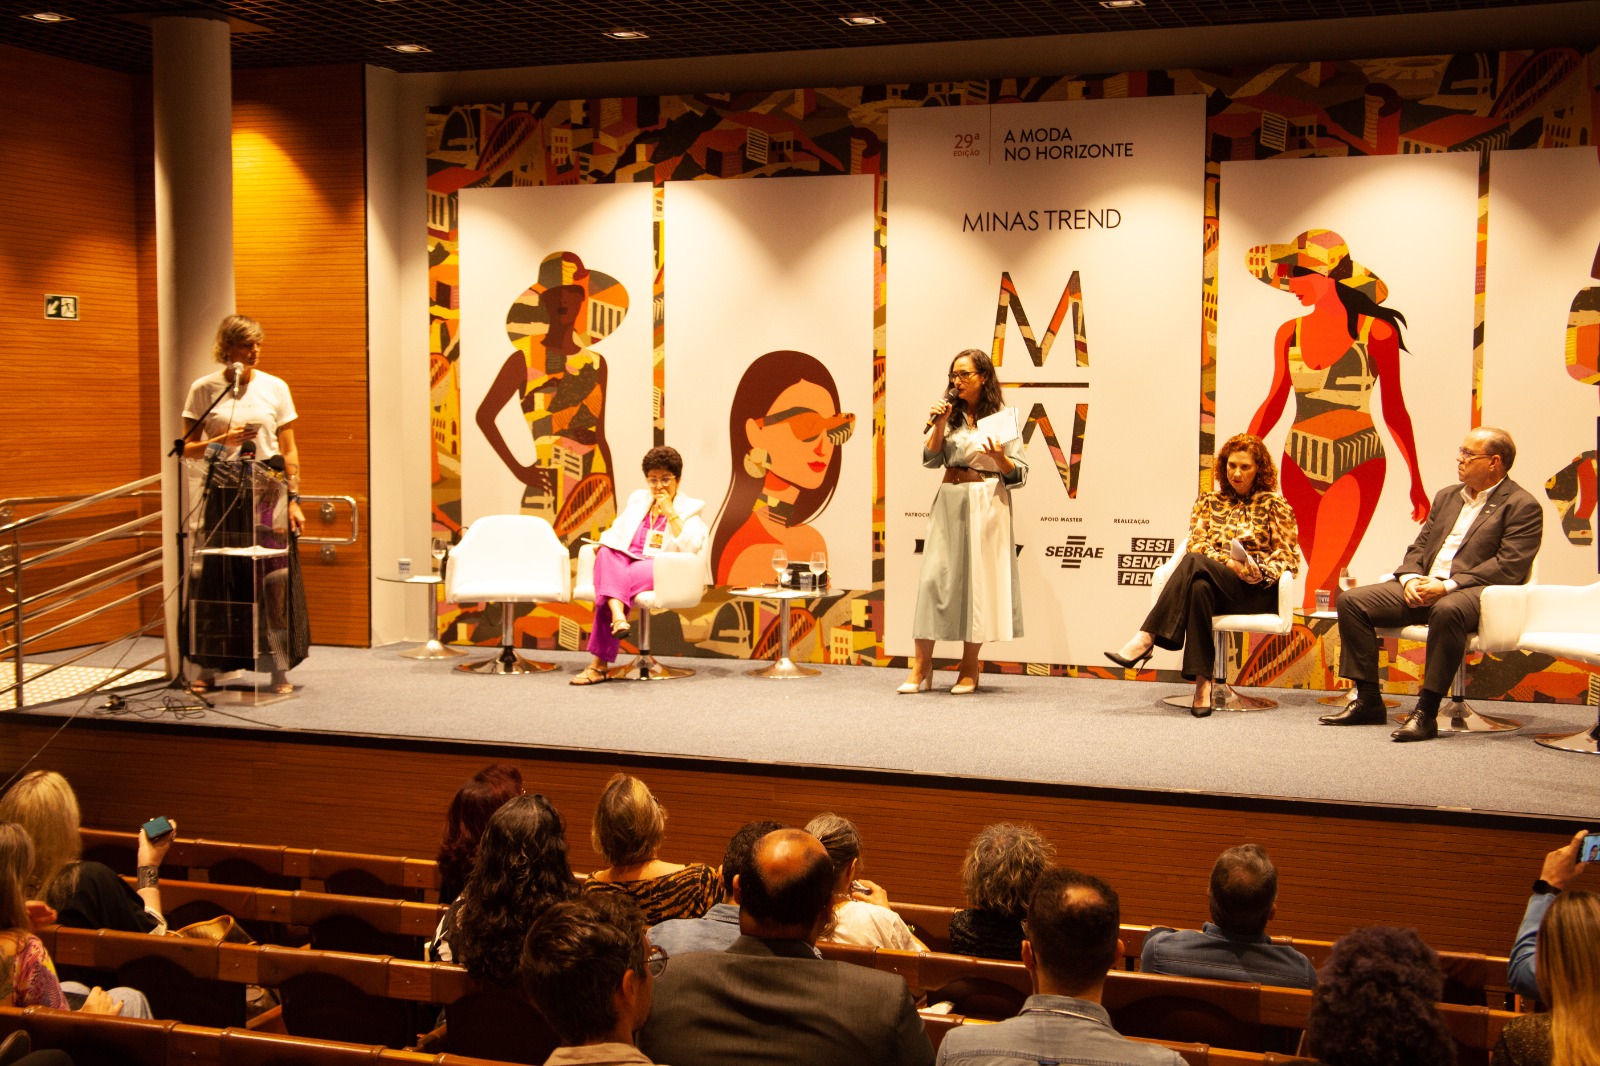 Governo de Minas Gerais lança projeto executivo de moda durante abertura do Minas Trend